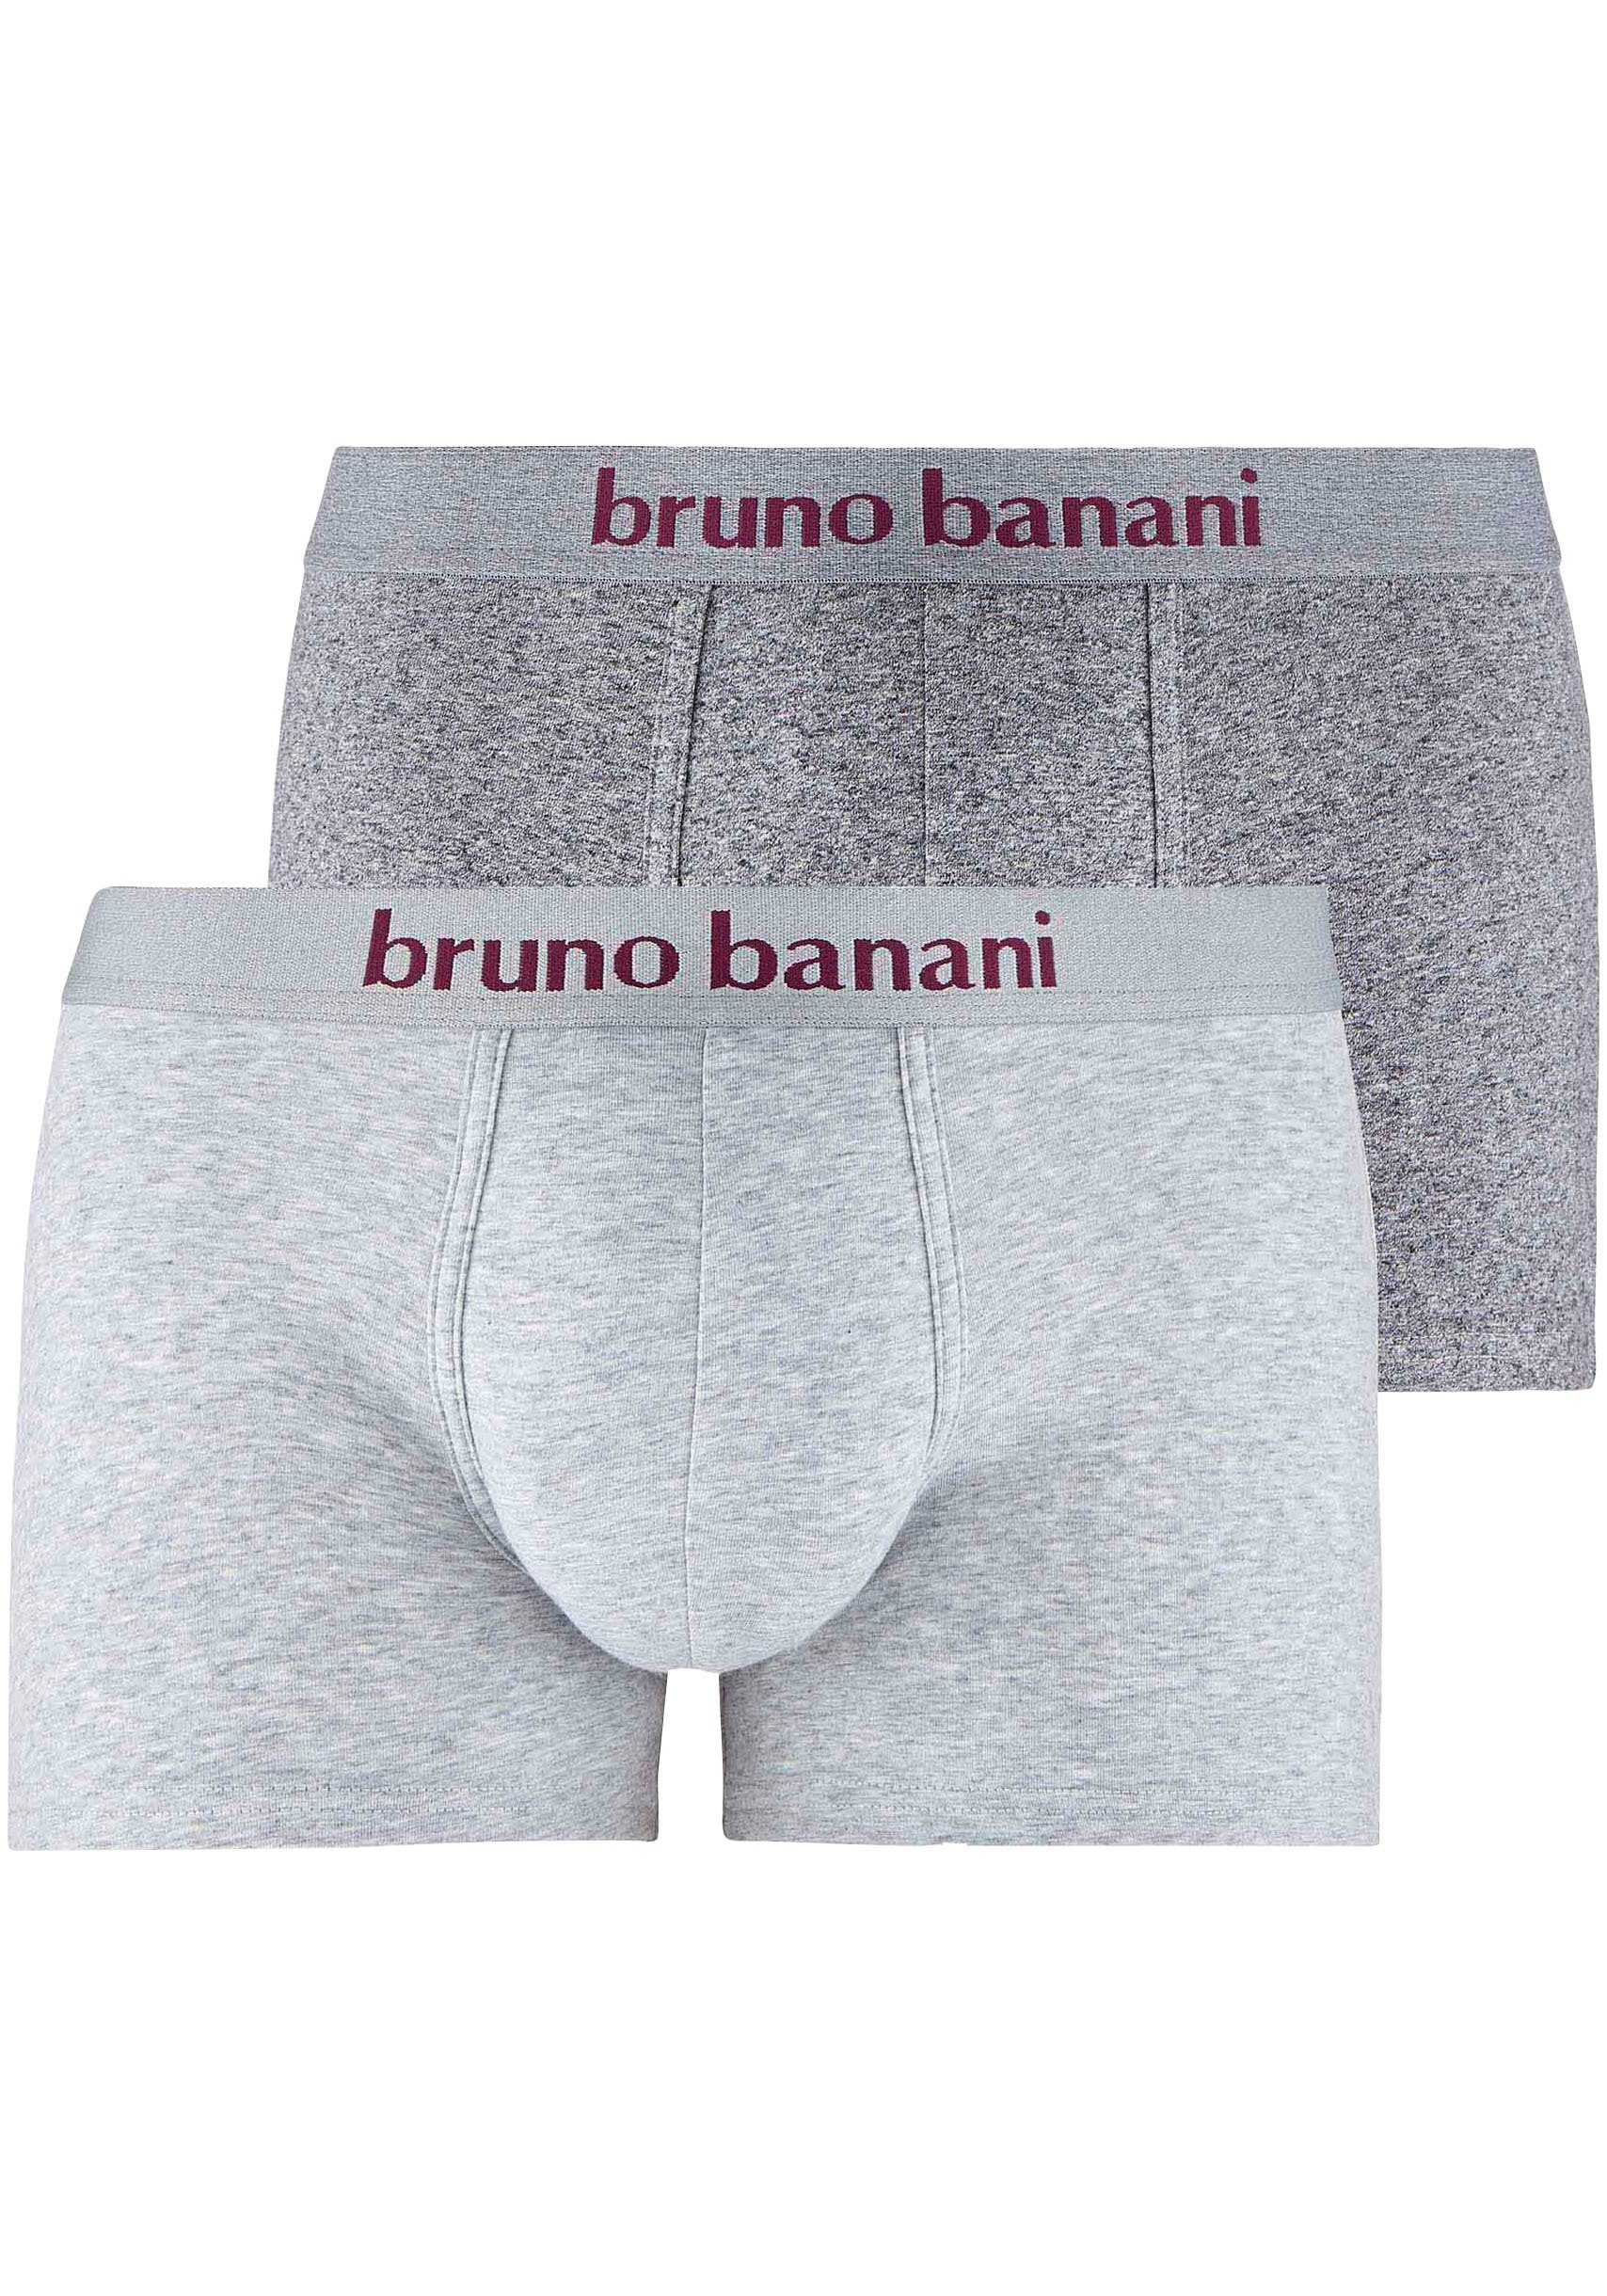 bruno banani boxershort mêlee (set, 2 stuks) grijs